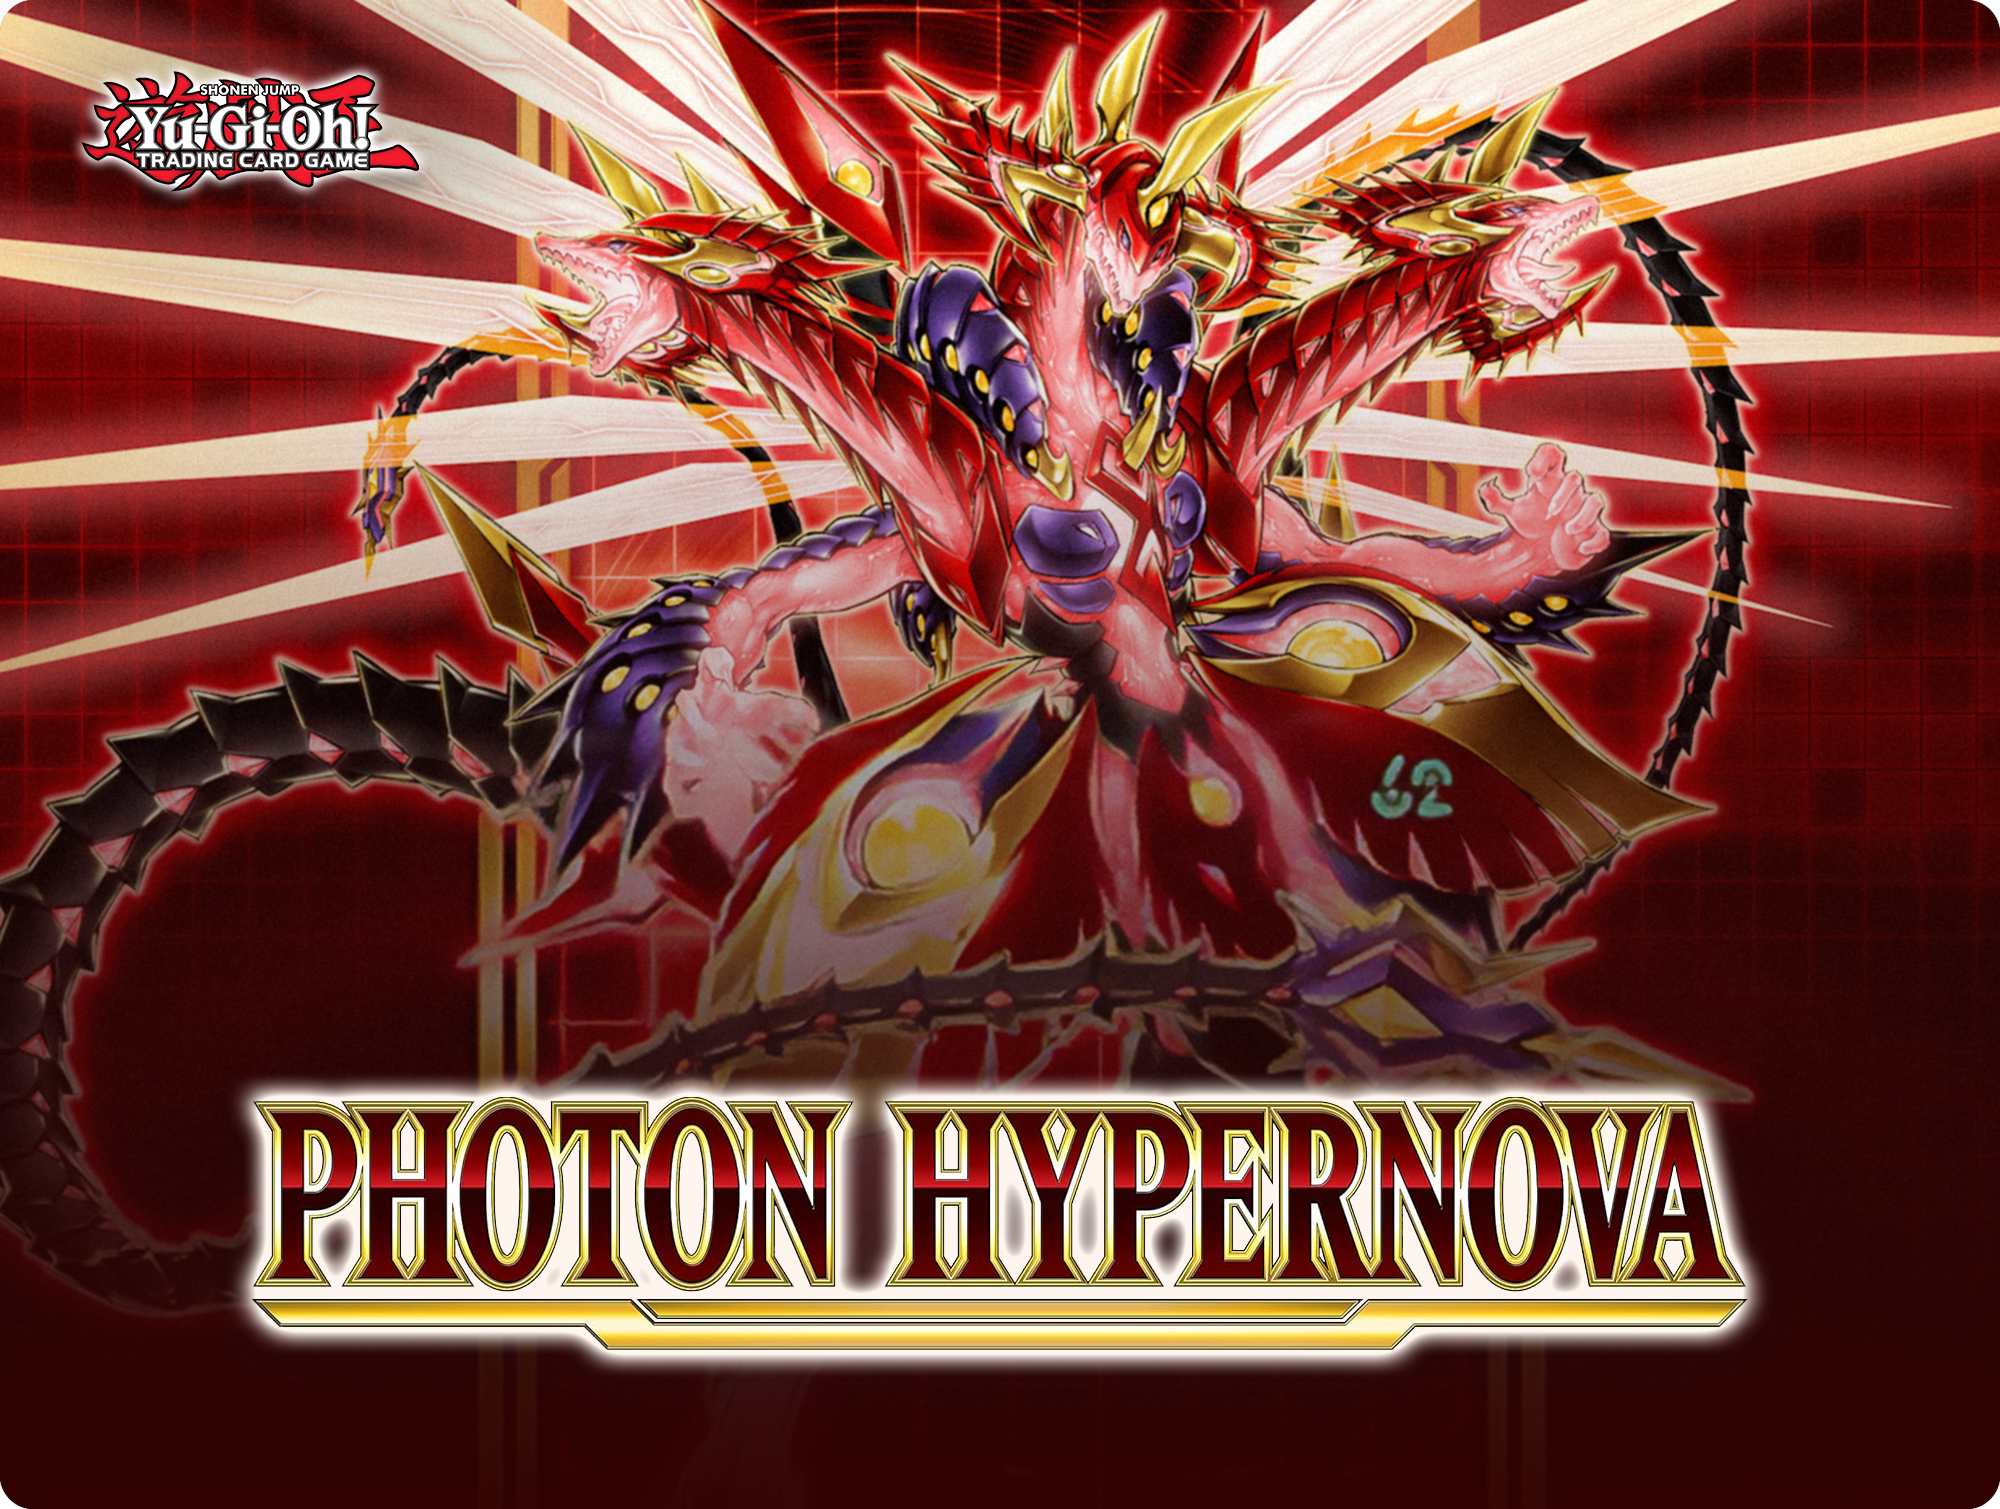 Yu-Gi-Oh! Photon Hypernova! - The Card Vault